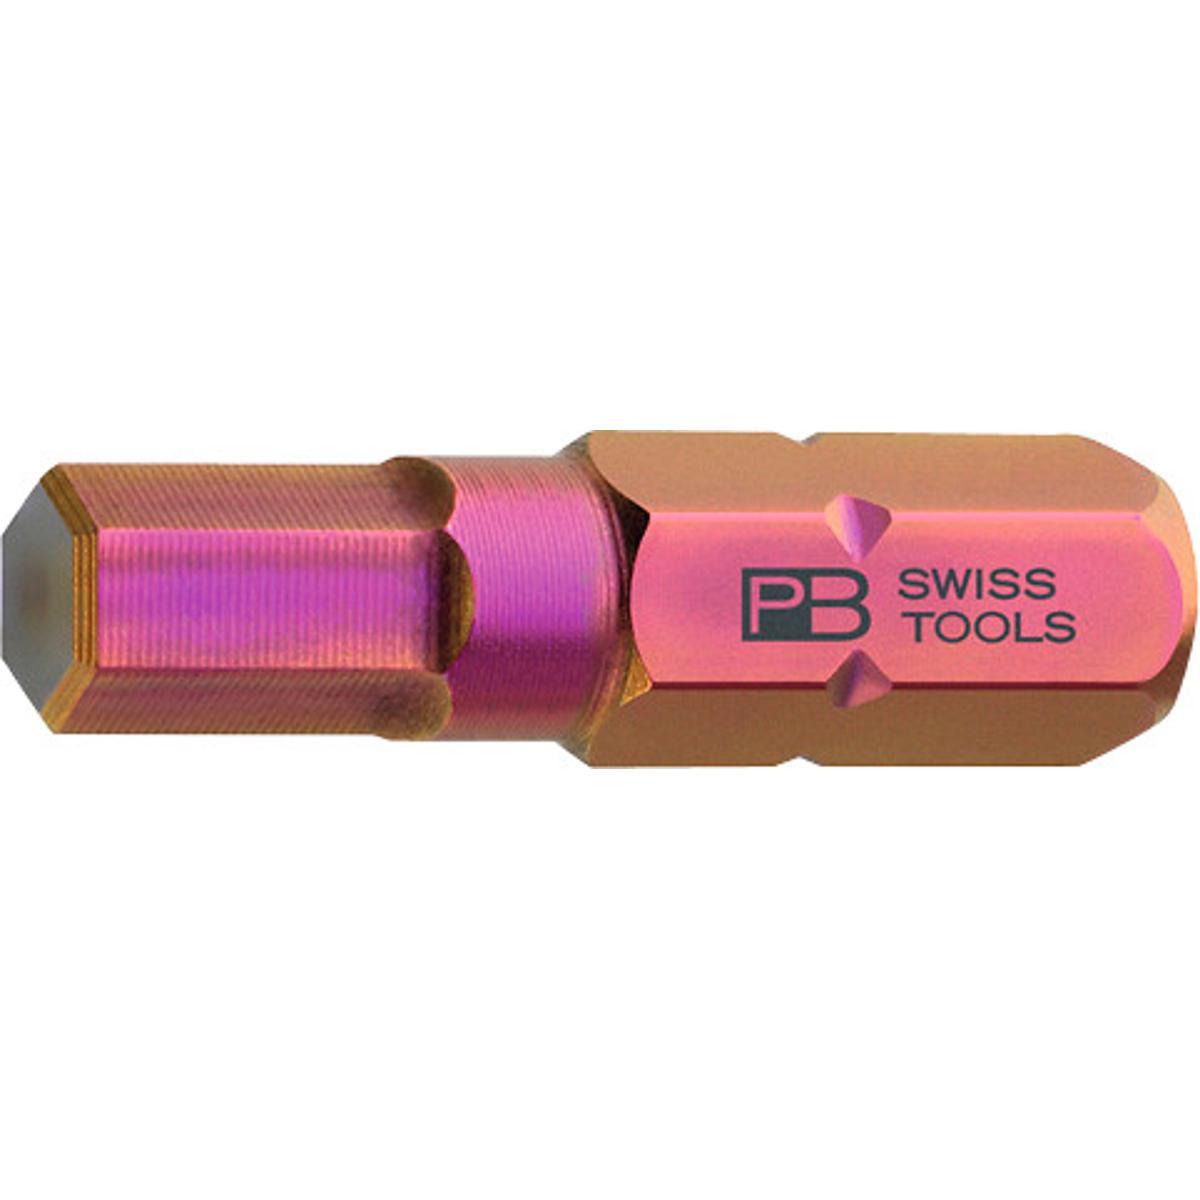 Đầu Bit 1/4 Inch Lục Giác Size 4mm Pb Swiss Tools 675290 4 - Hàng Chính Hãng 100% từ Thụy Sỹ